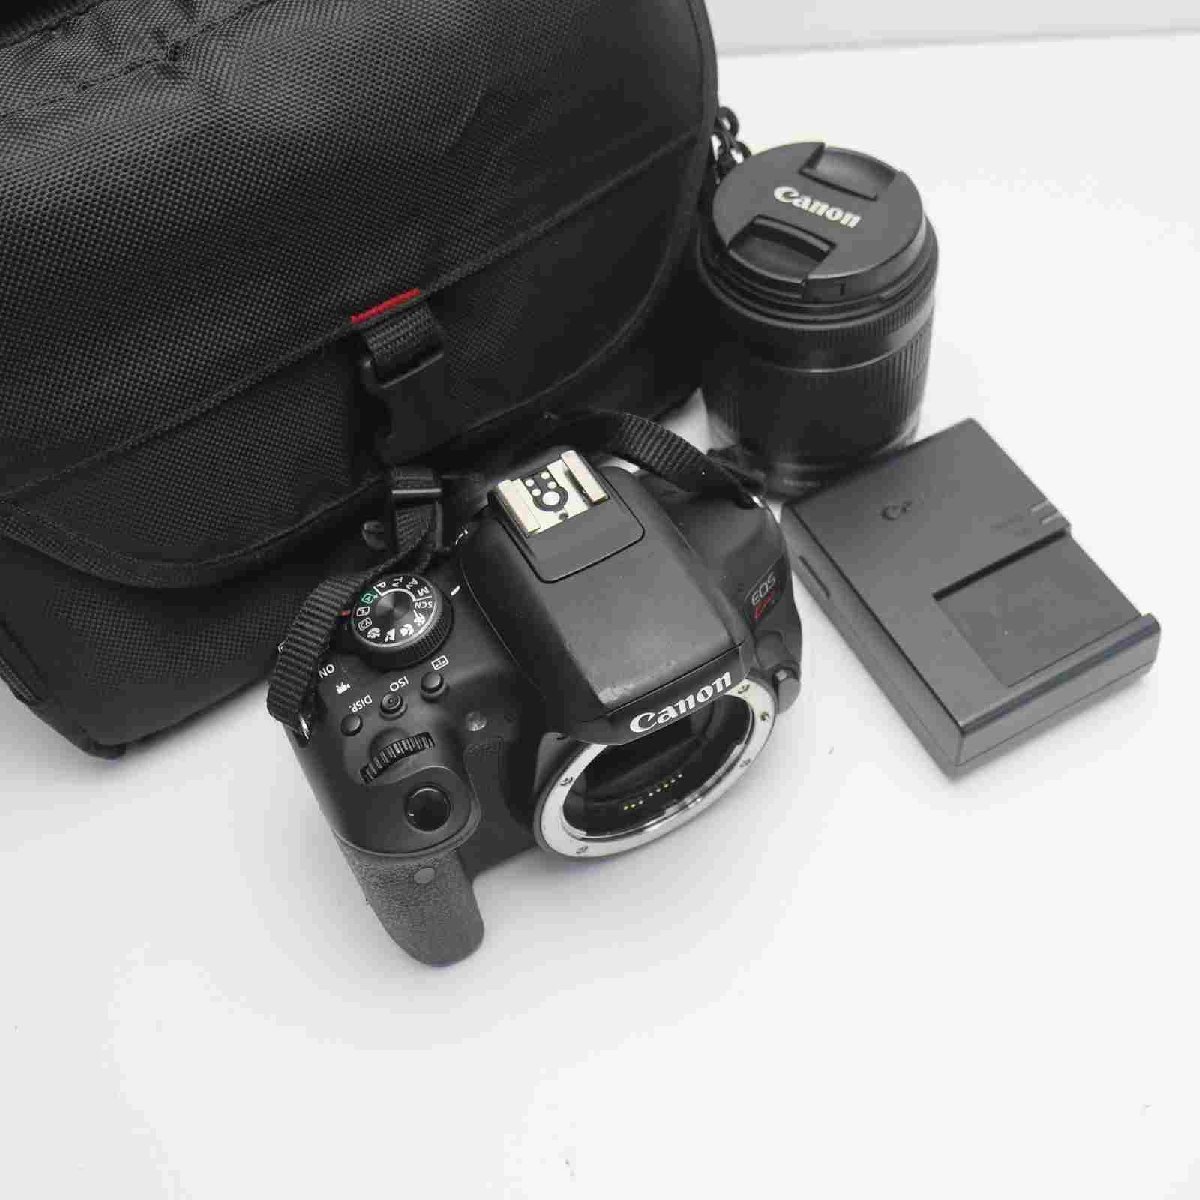 超美品 EOS Kiss X8i レンズキット ブラック 即日発送 一眼レフ Canon 本体 あすつく 土日祝発送OK